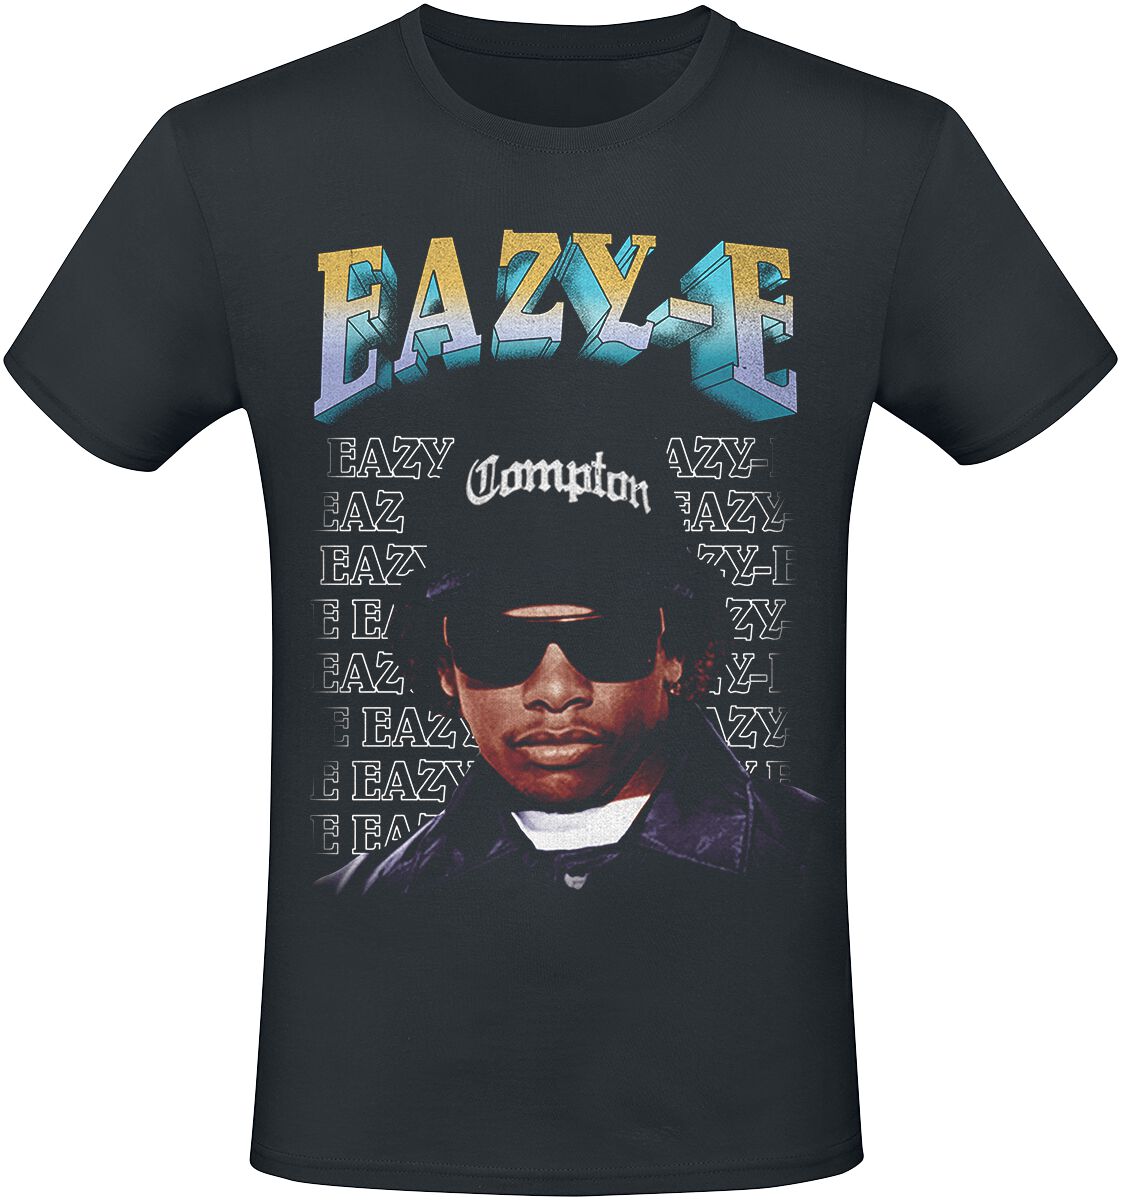 Eazy-E T-Shirt - Compton - S bis 3XL - für Männer - Größe M - schwarz  - Lizenziertes Merchandise!